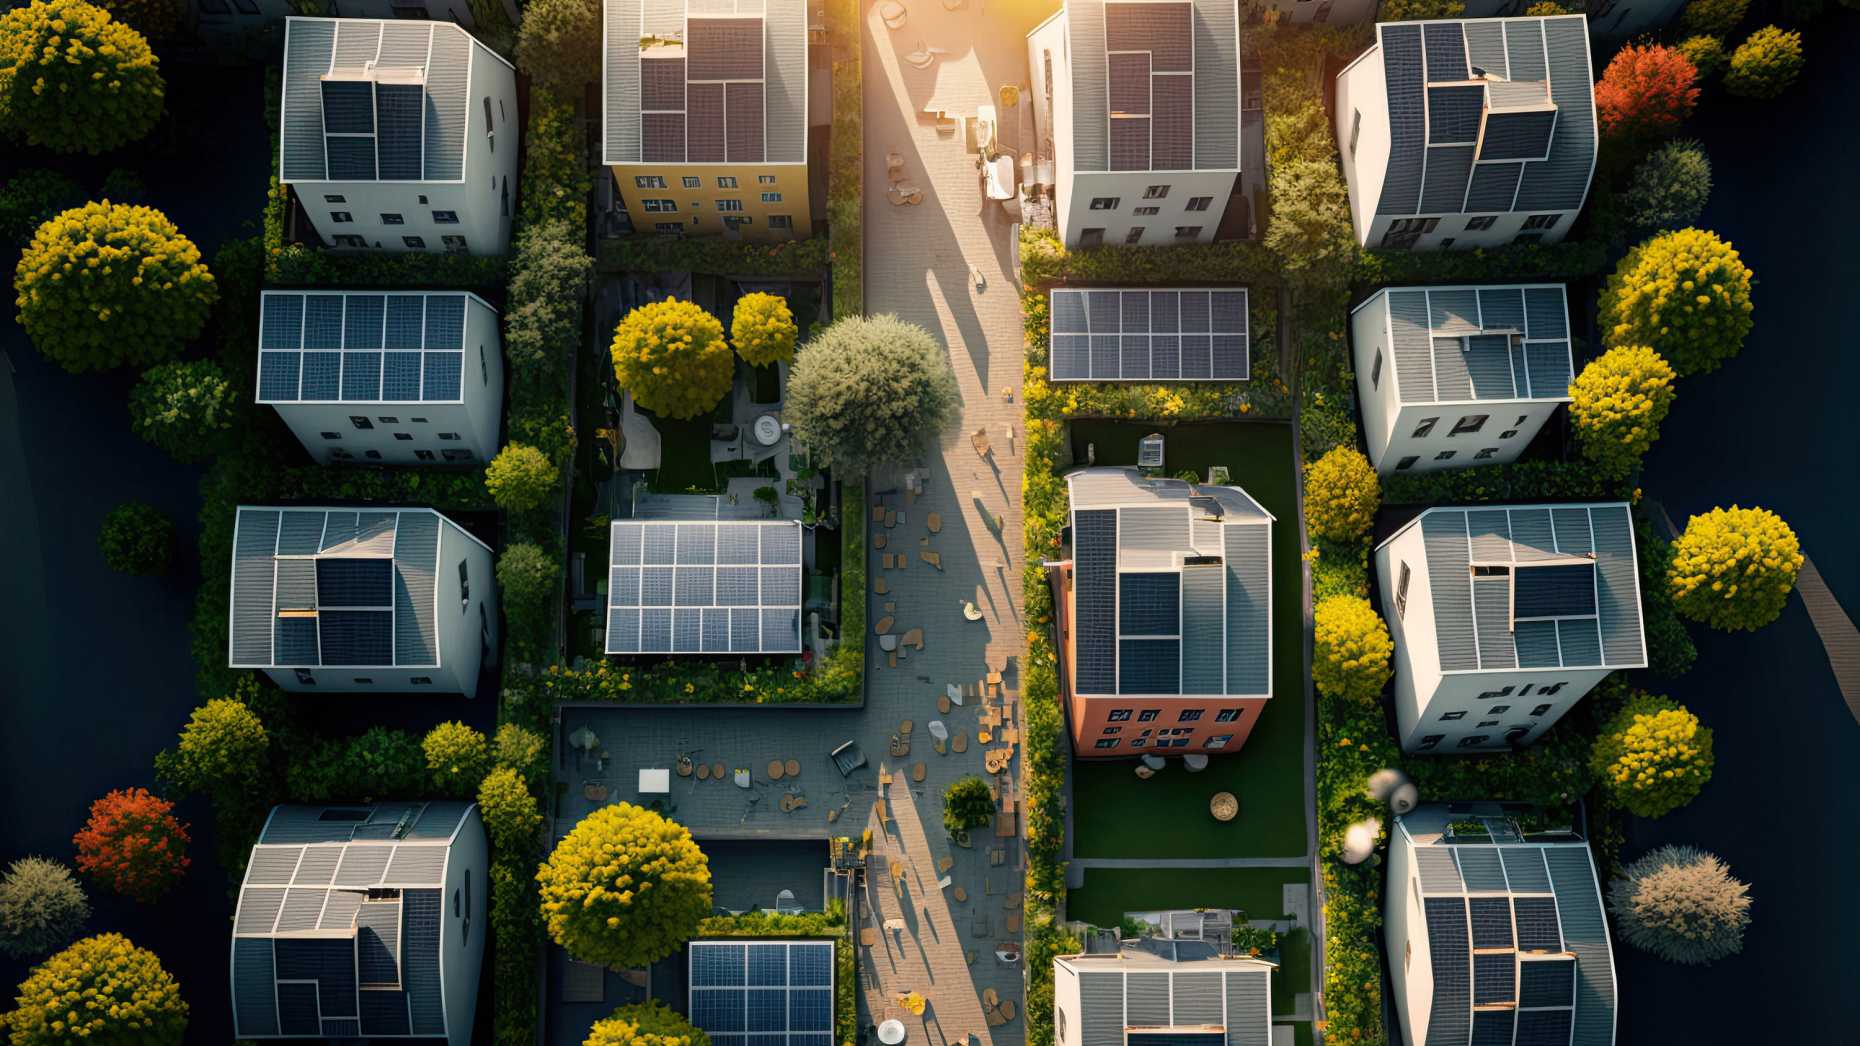 Häusersiedlung aus der Vogelperspektive, auf den Dächern der Häuser sind Solarpanels.